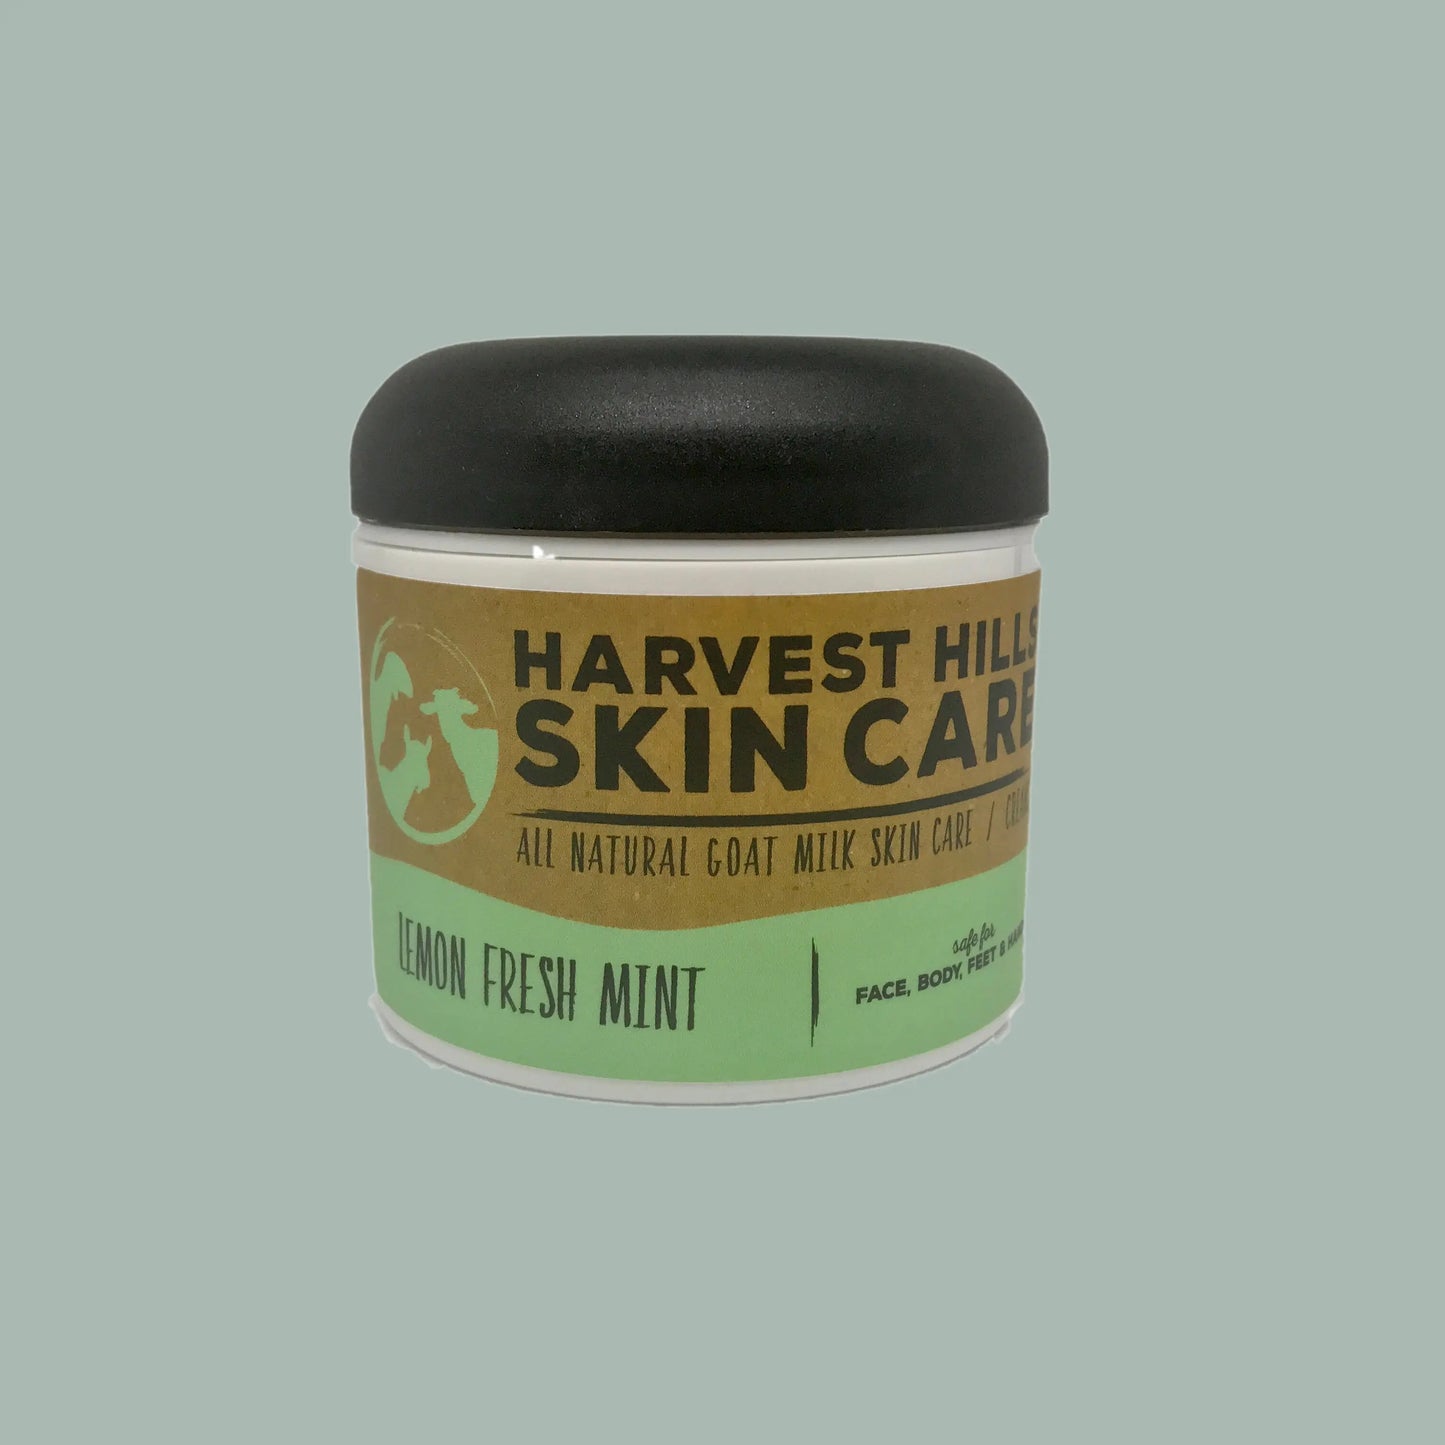 Lemon Fresh Mint Intense Moisturizer - Refills avaliable Harvest Hills Skin Care All Natural Goat Milk Skin Care